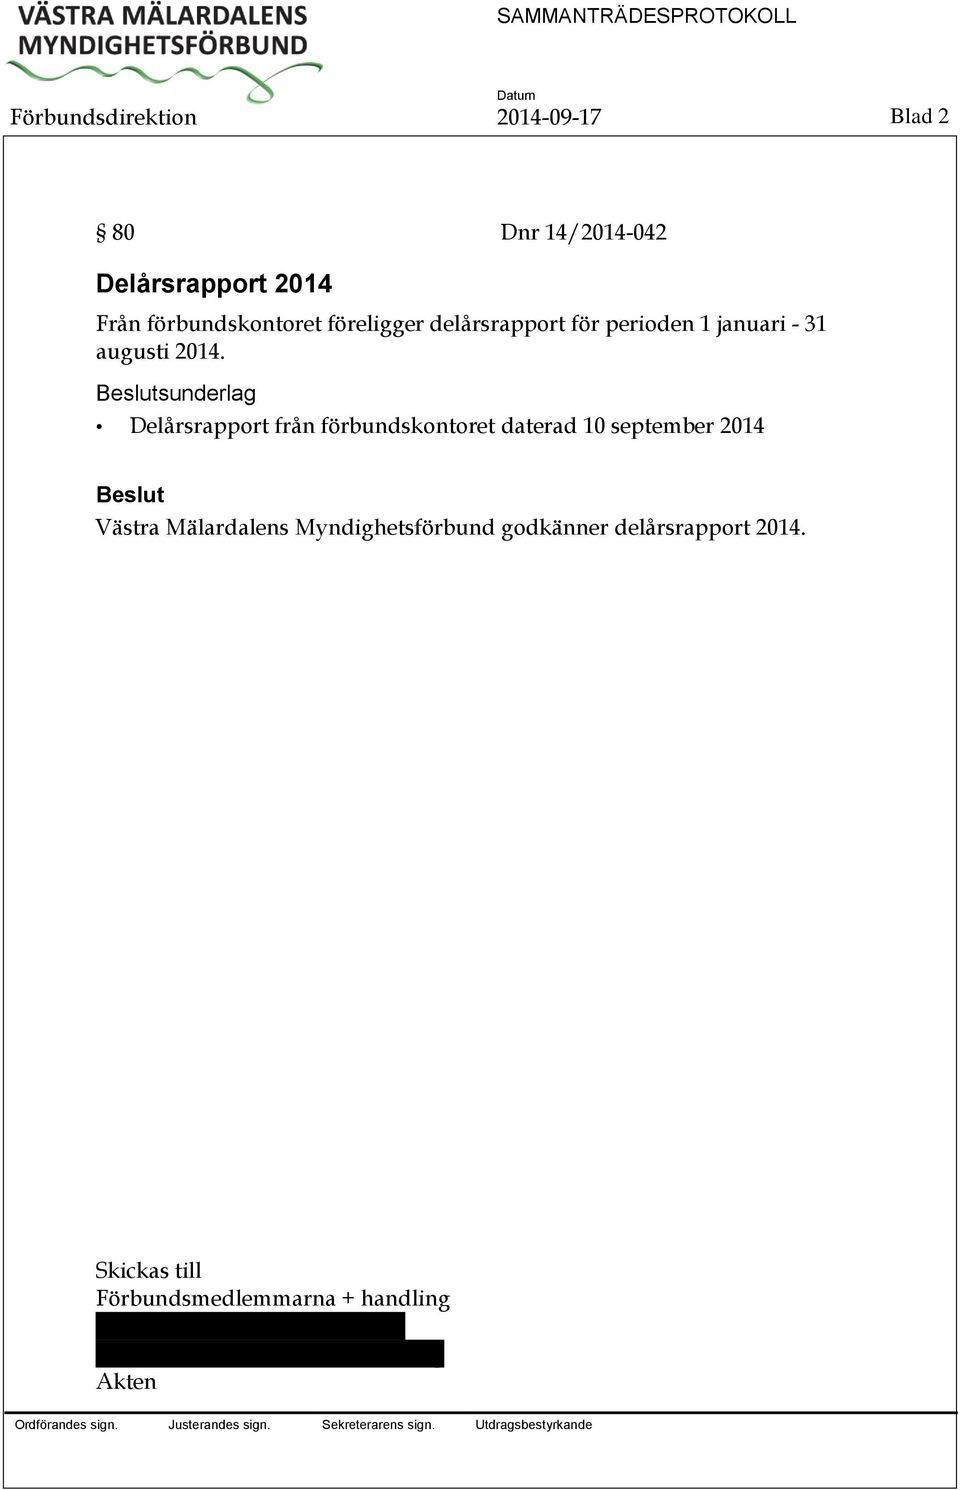 sunderlag Delårsrapport från förbundskontoret daterad 10 september 2014 Västra Mälardalens